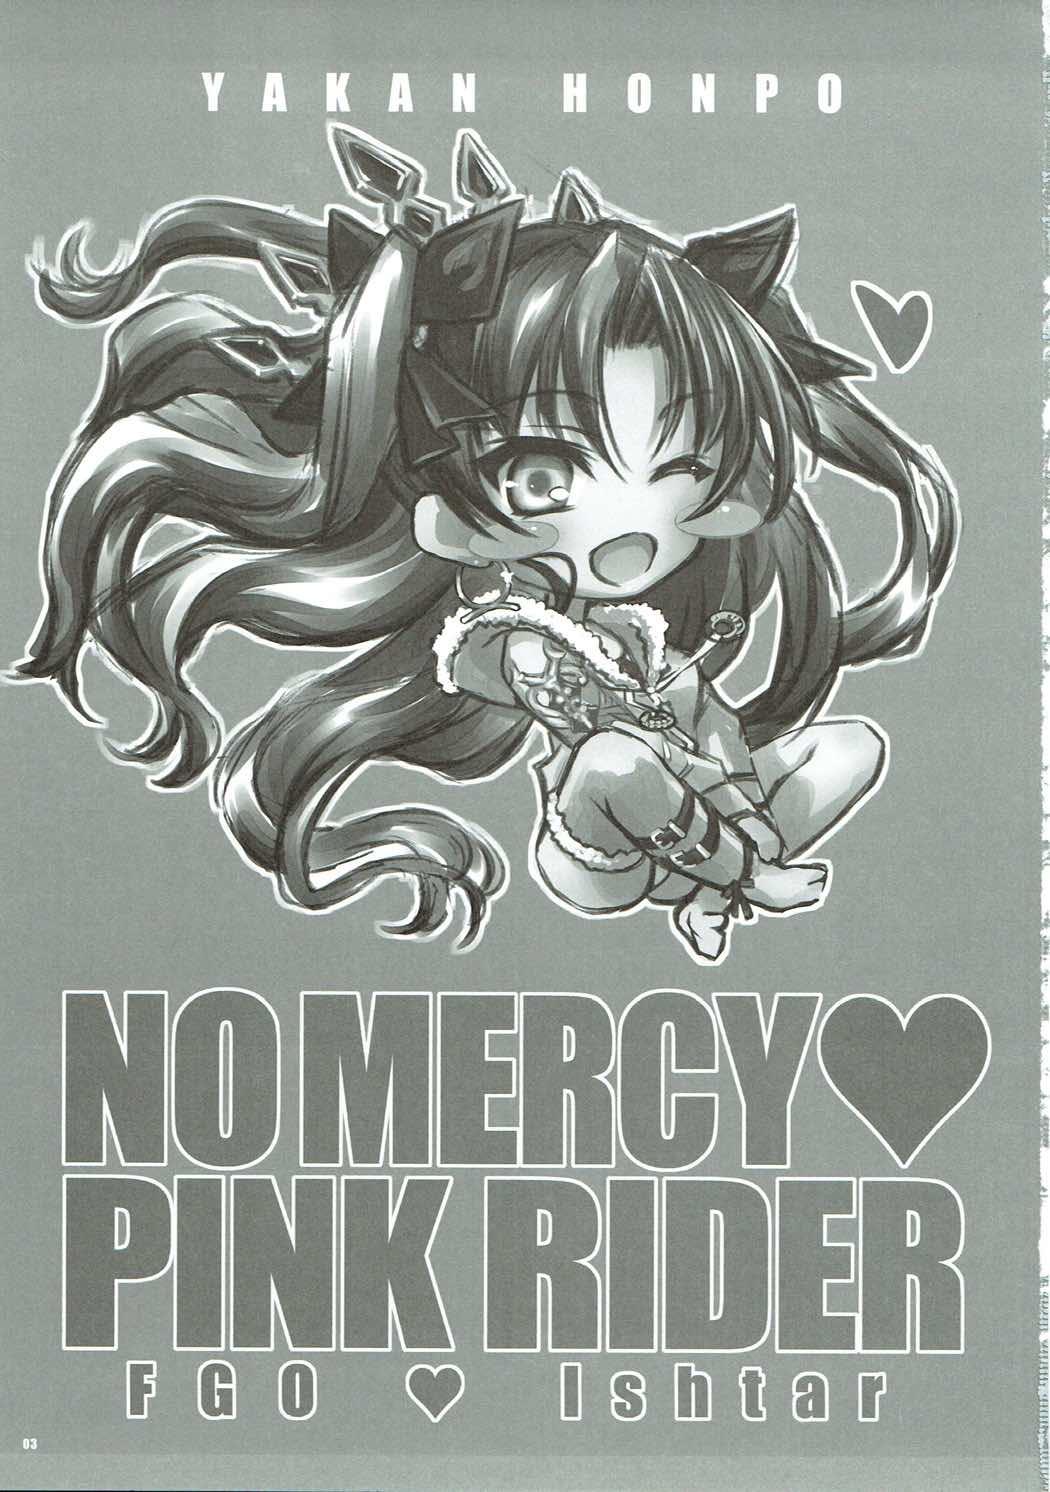 Yousha no Nai Pink Rider - No Mercy Pink Rider 1